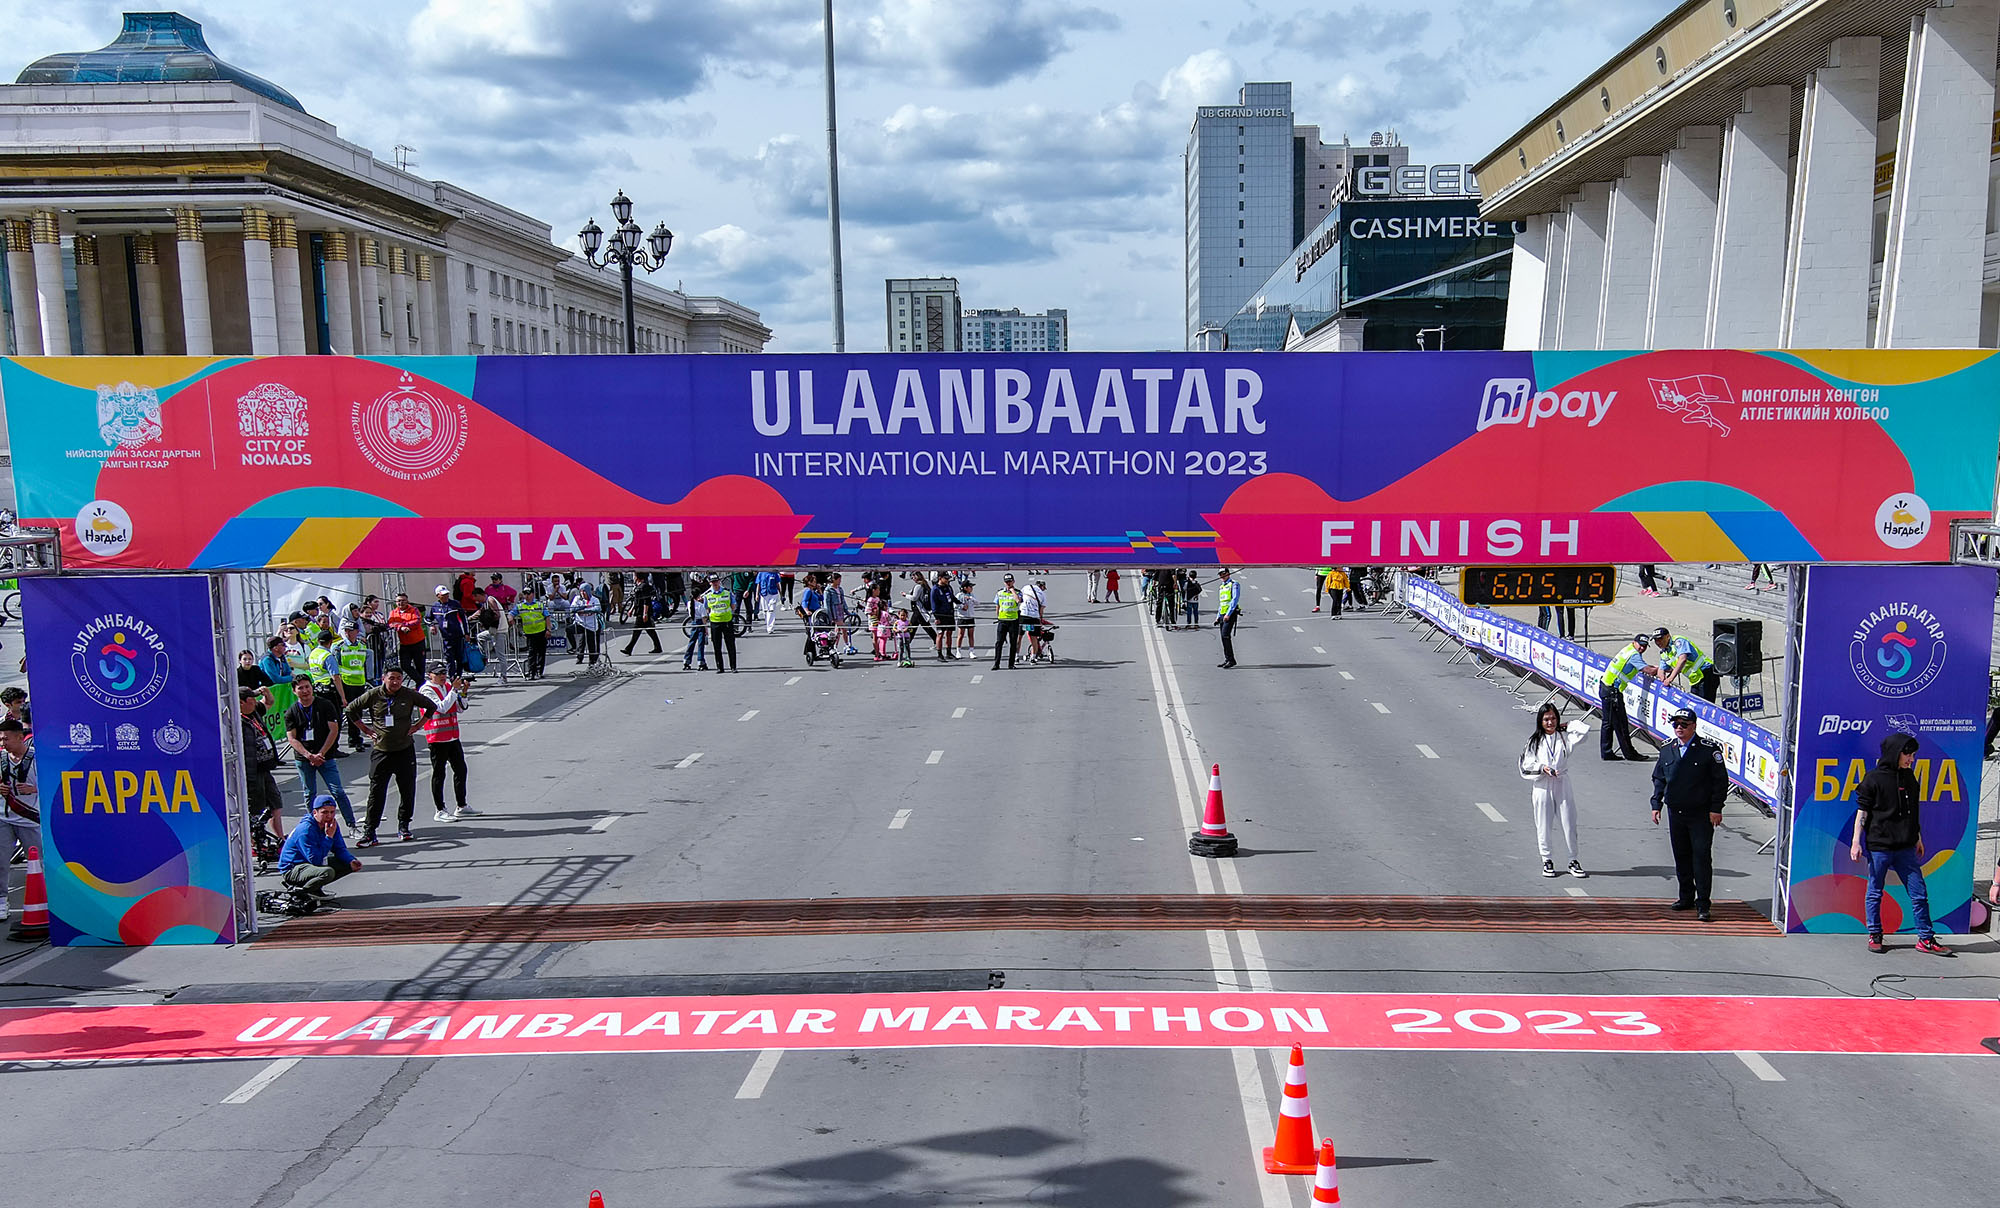 “Улаанбаатар марафон"-д 140 гэр бүл гүйхээр бүртгүүлсэн байна